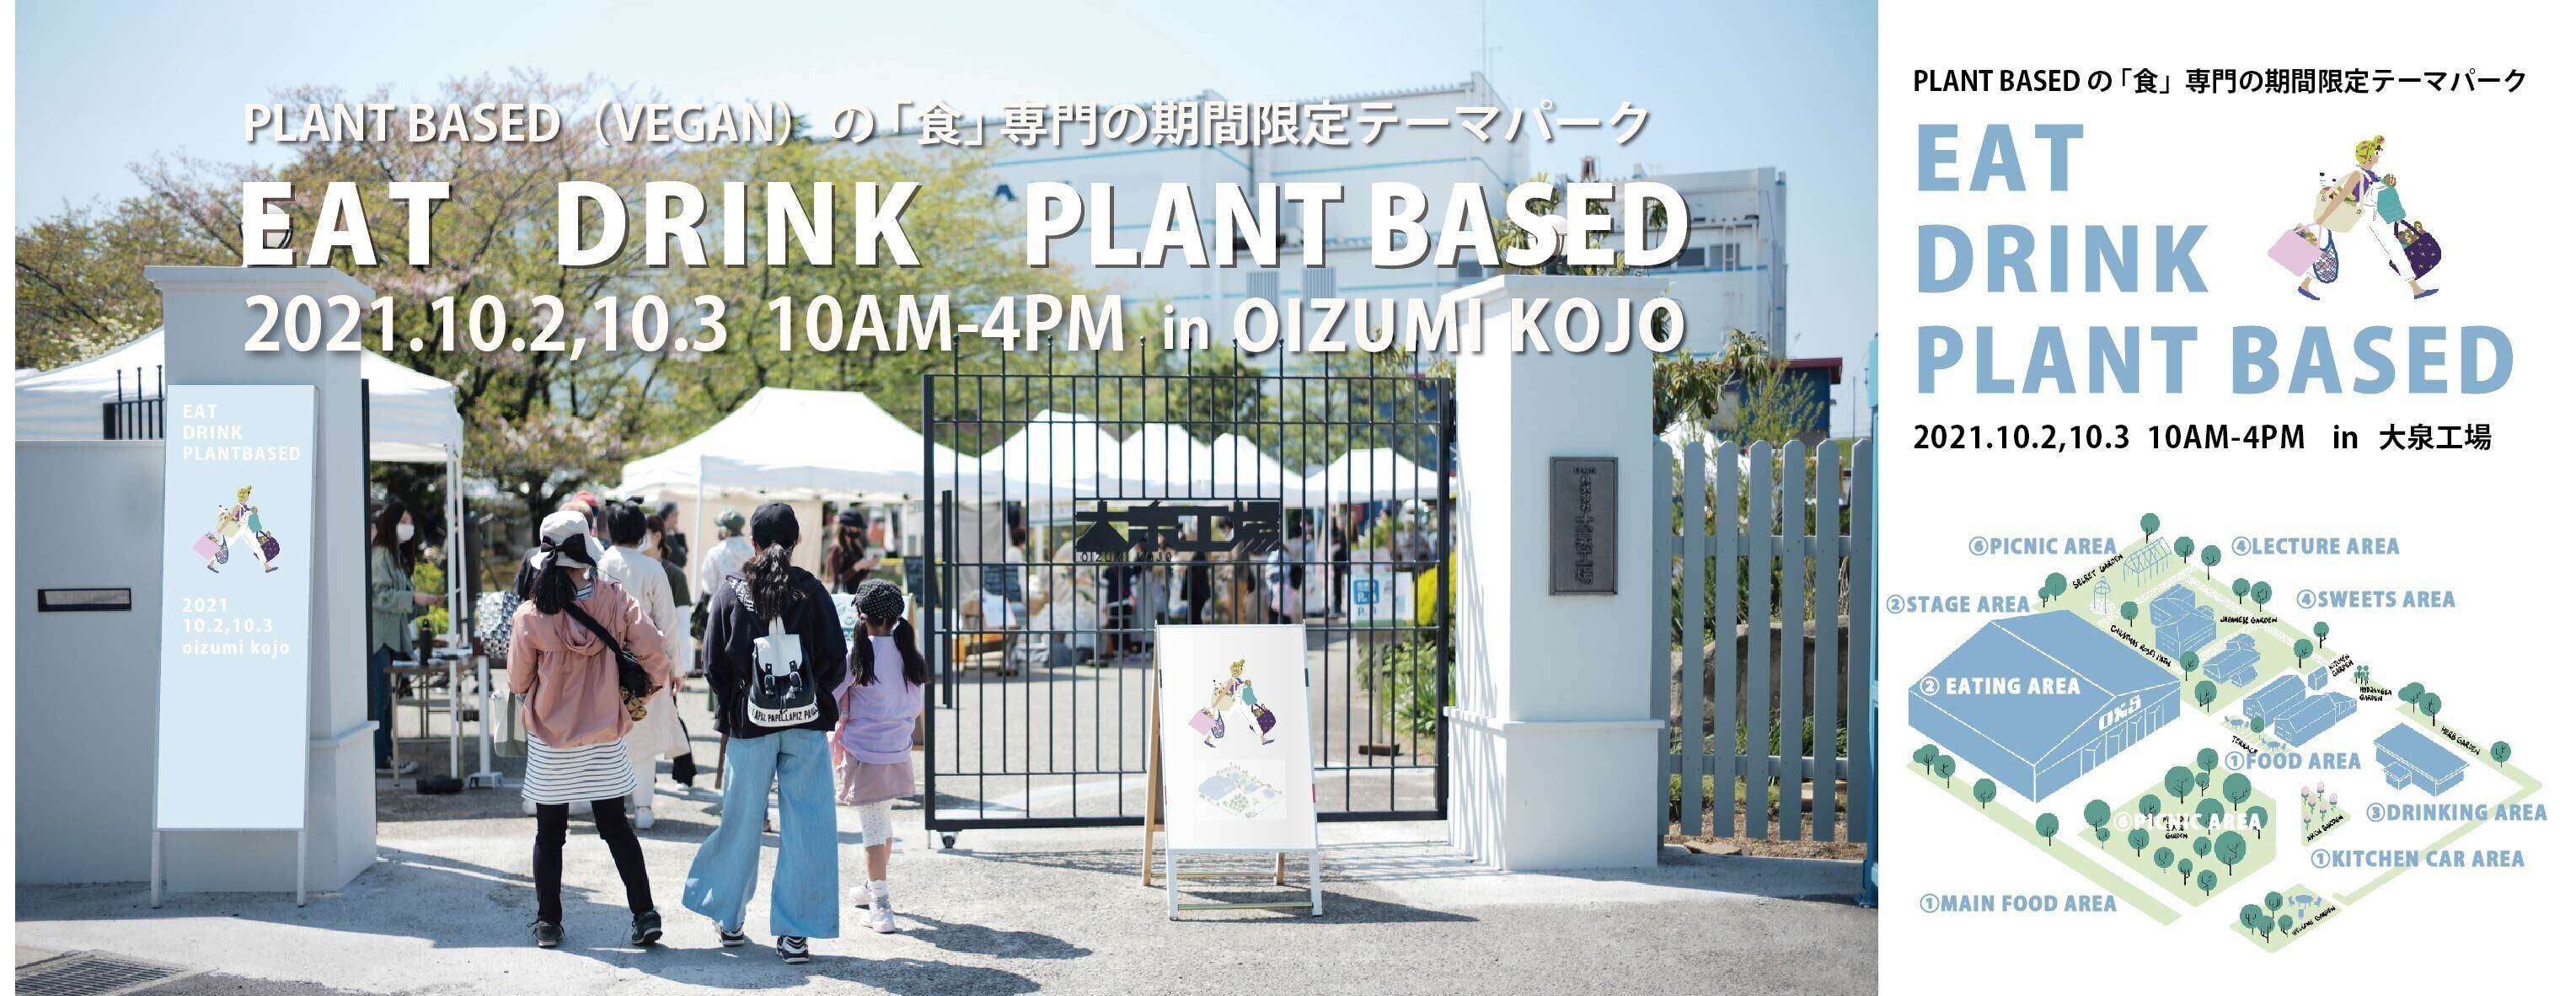 日本最大級の規模「EAT DRINK PLANT BASED」を開催のサブ画像1